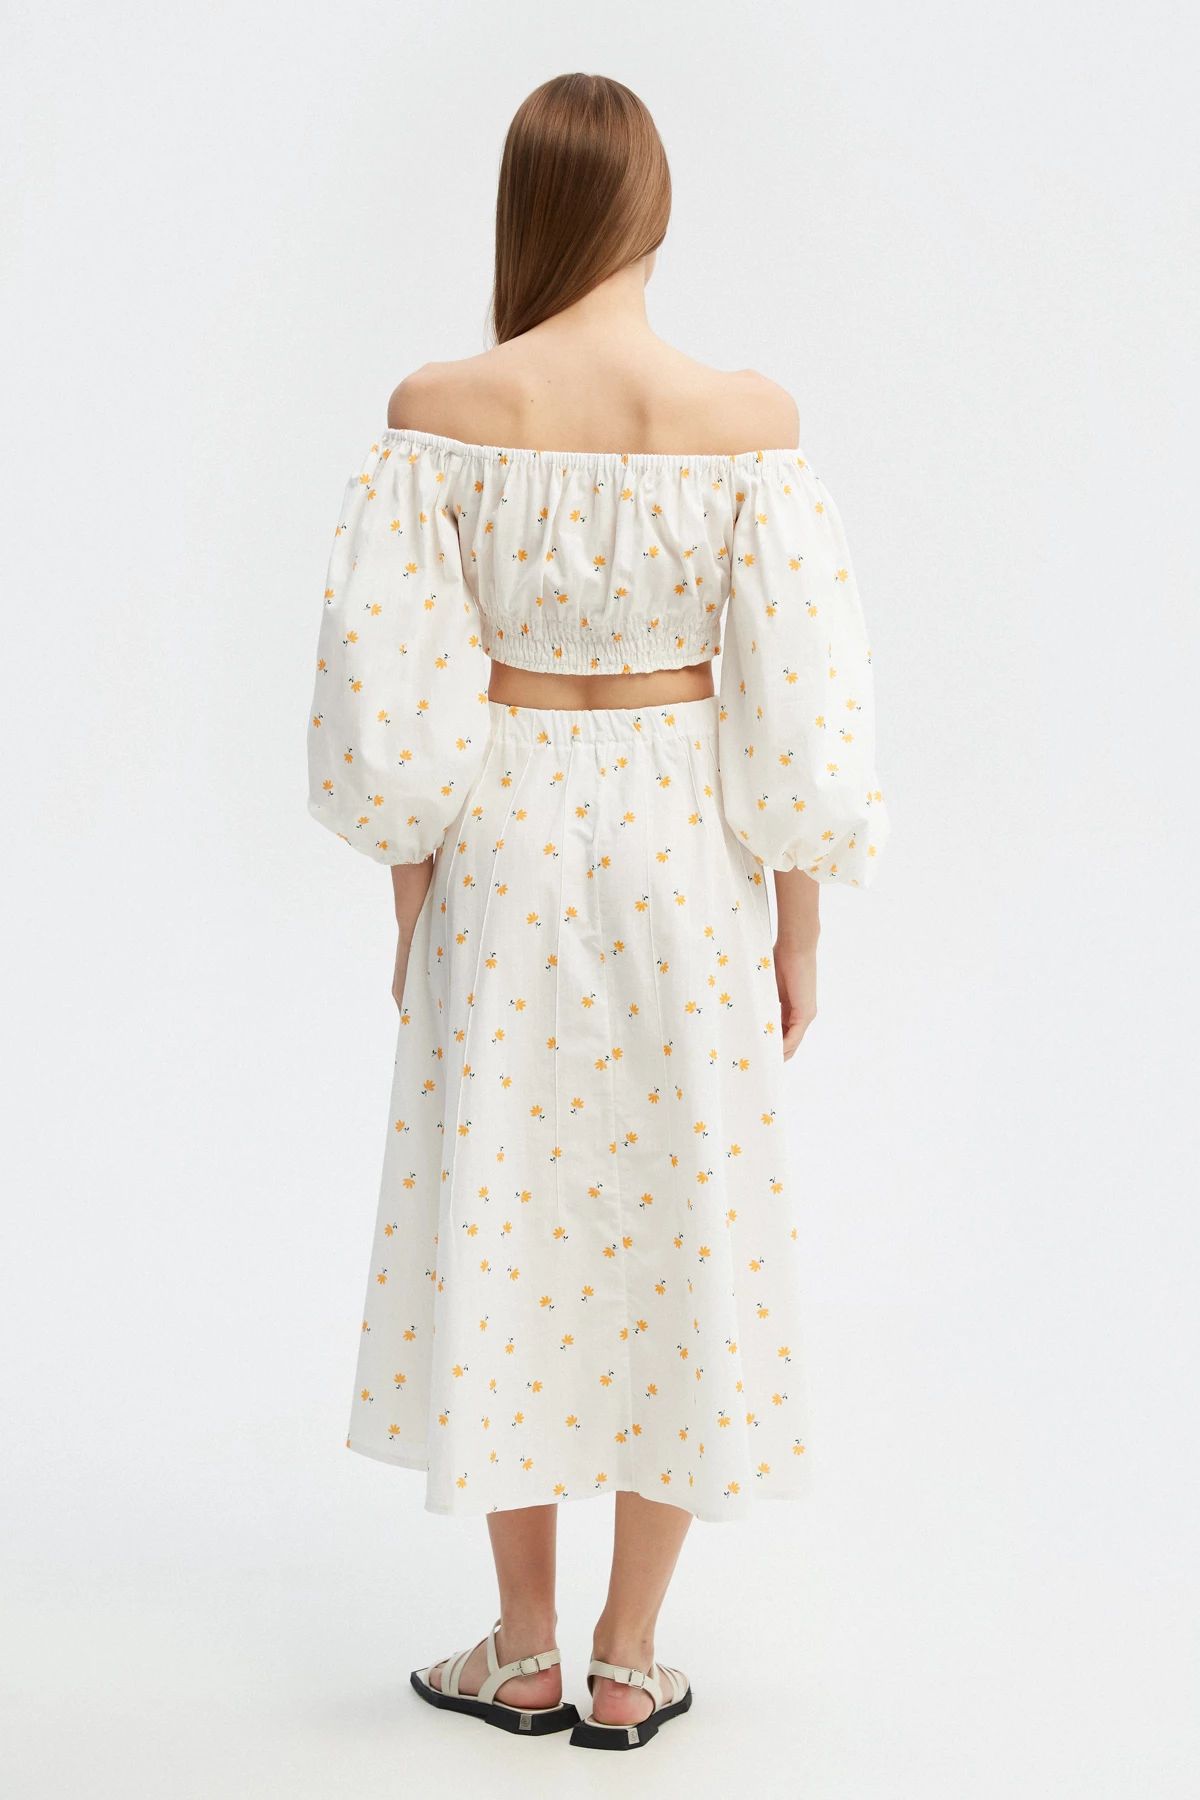 White cotton midi skirt with yellow flowers print, photo 5